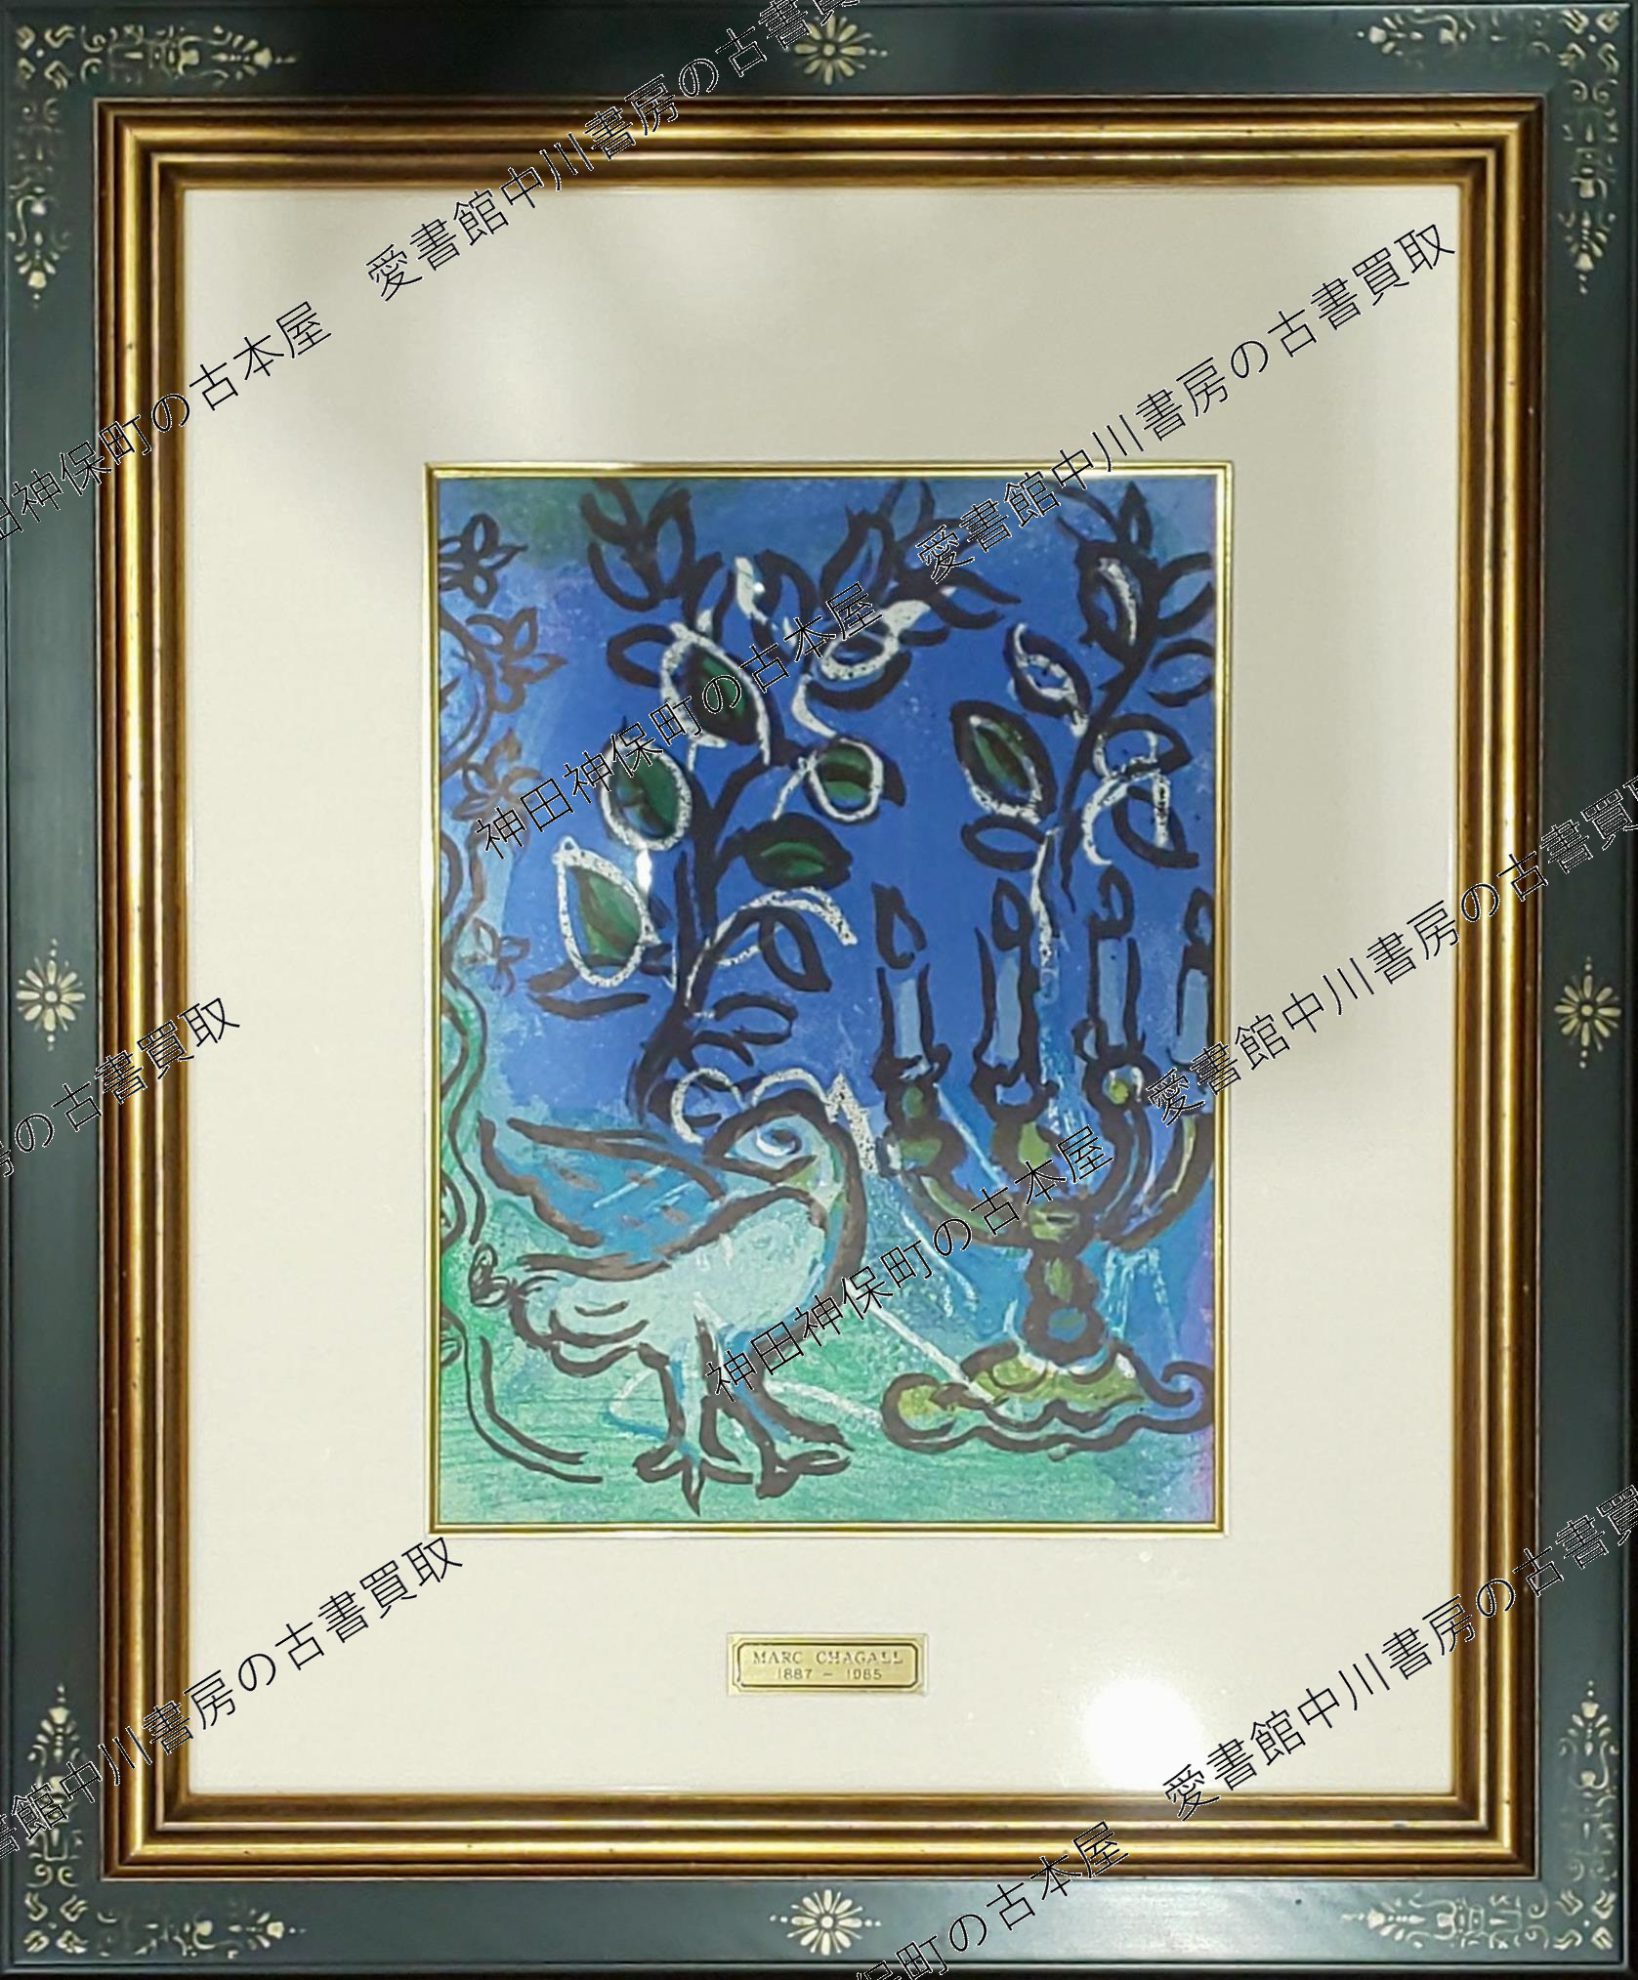 マルク・シャガールの美術作品(リトグラフ)や画集などの古本を出張買取